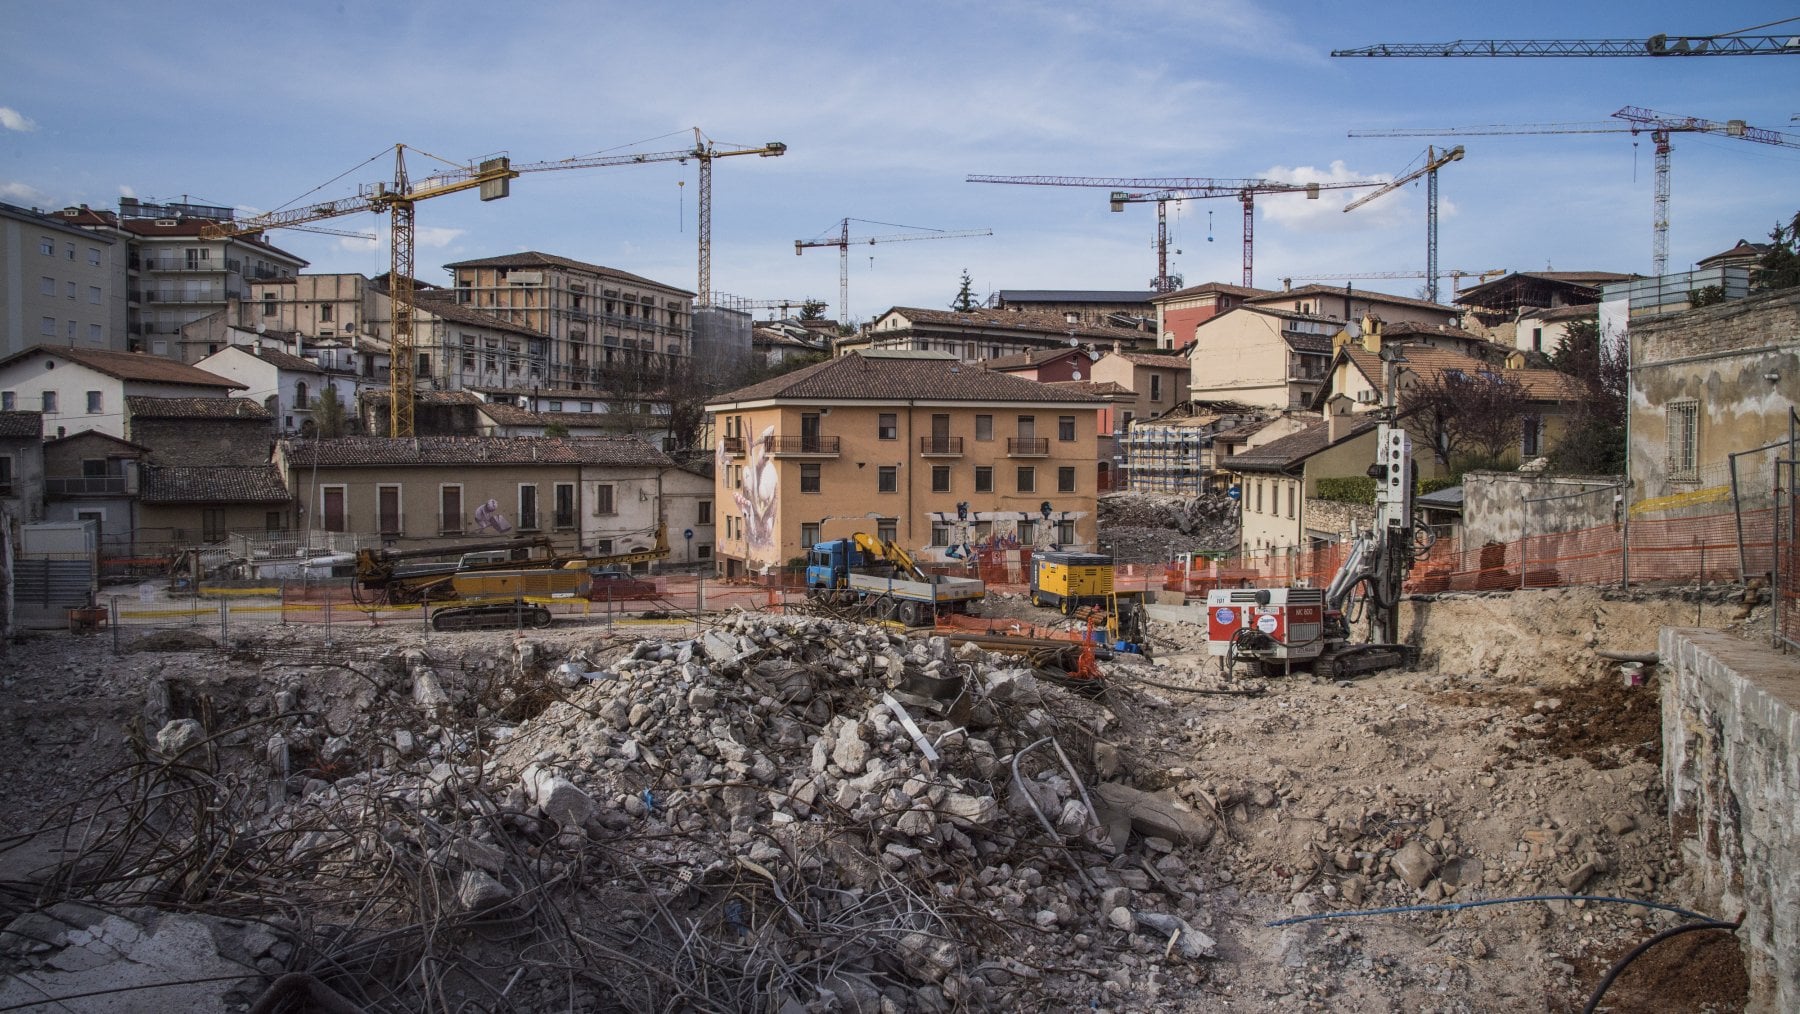 Terremoto de L'Aquila: il governo condannato a risarcire le vittime dopo 15 anni